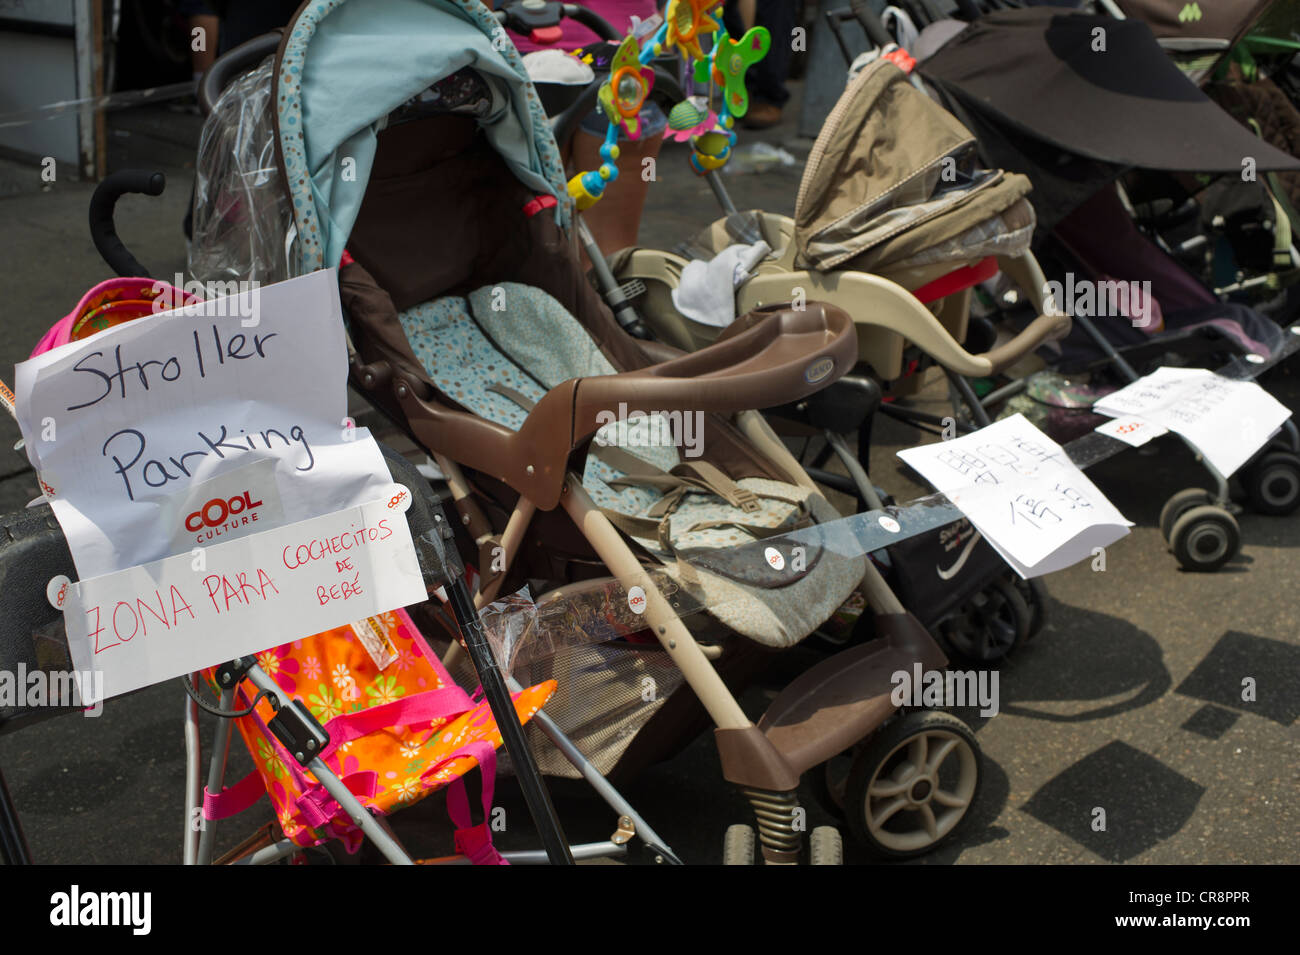 Kammerdiener Kinderwagen Parken ist während der "Ei Brötchen und Ei-Cremes"  Strassenfest in Chinatown in New York zur Verfügung gestellt  Stockfotografie - Alamy